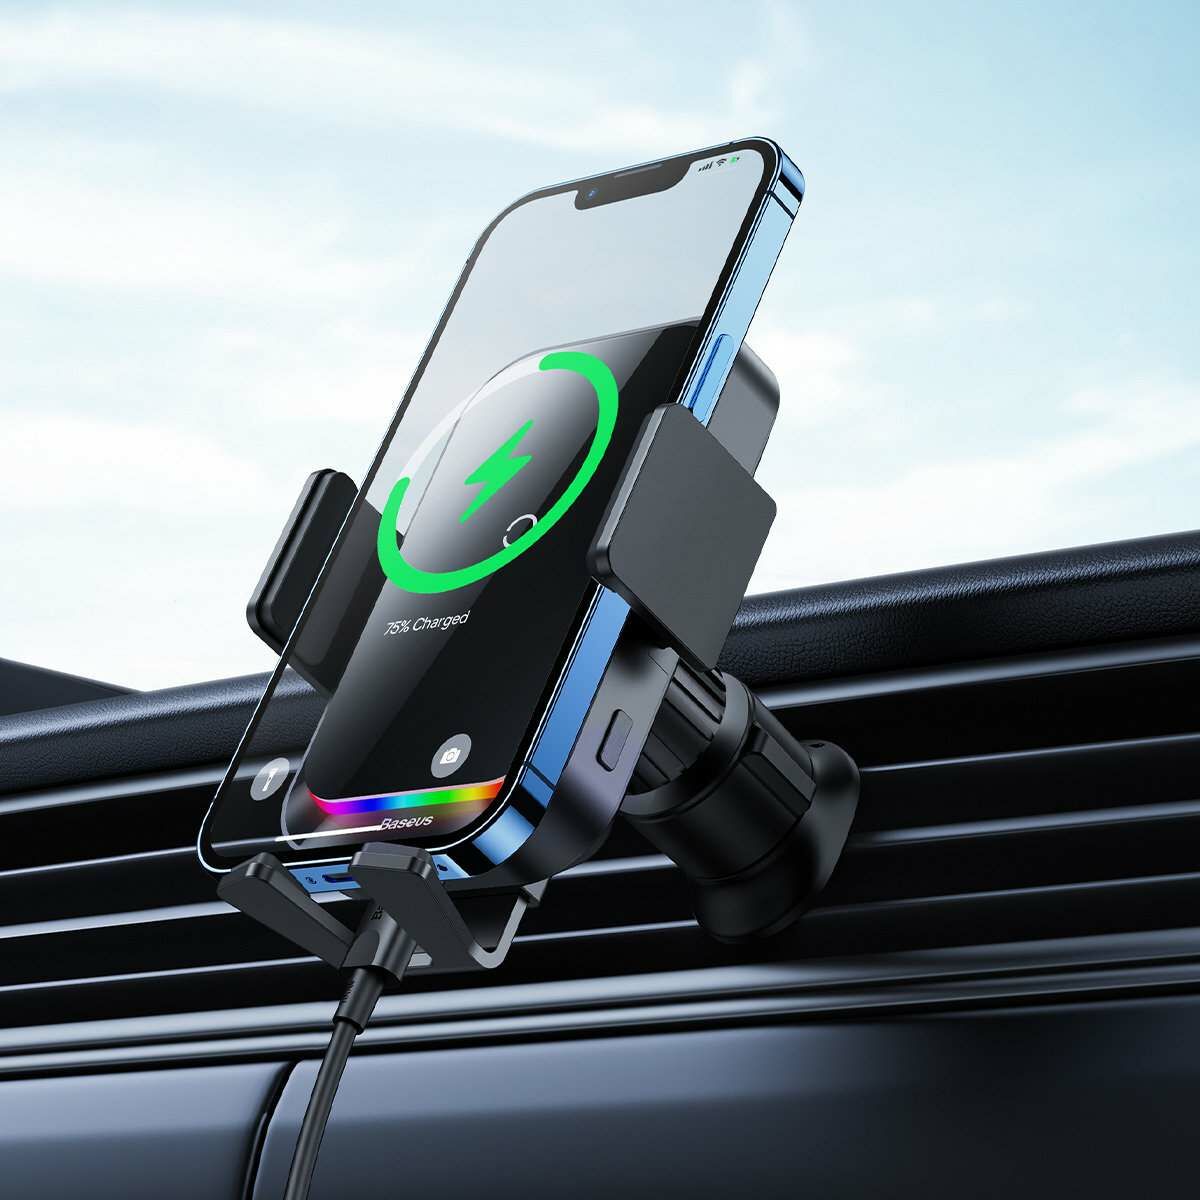 Kép 13/13 - Baseus autós telefon tartó, Halo automatikus záró szenzorral, RGB LED töltő csík, 15W, fekete (SUDD000001)